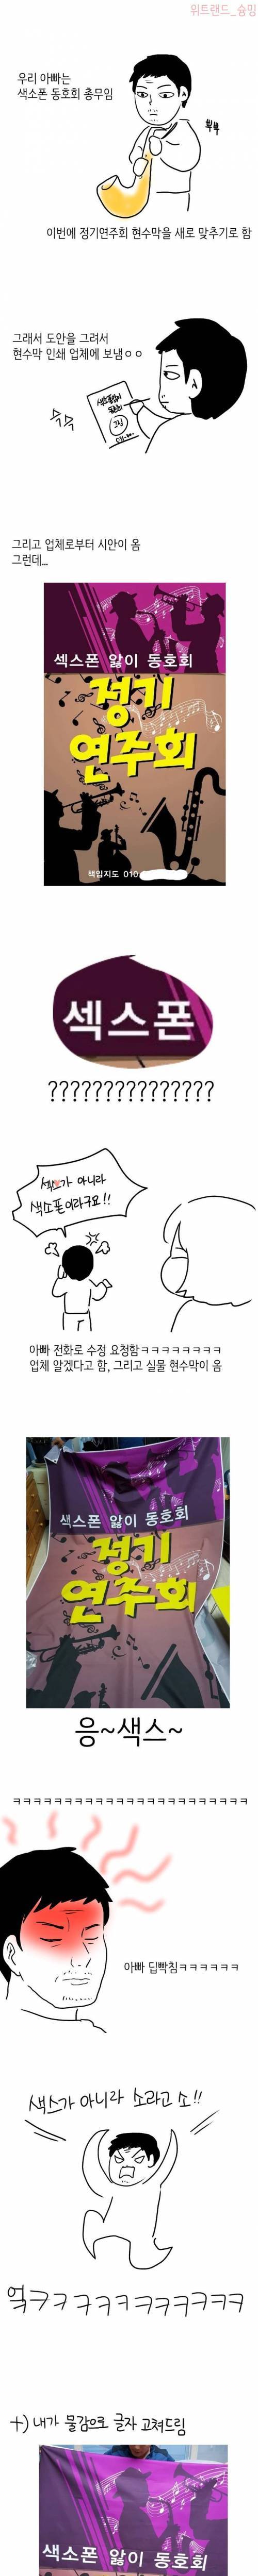 [스압] 아빠 색소폰 동호회 현수막 만드는 만화.jpg